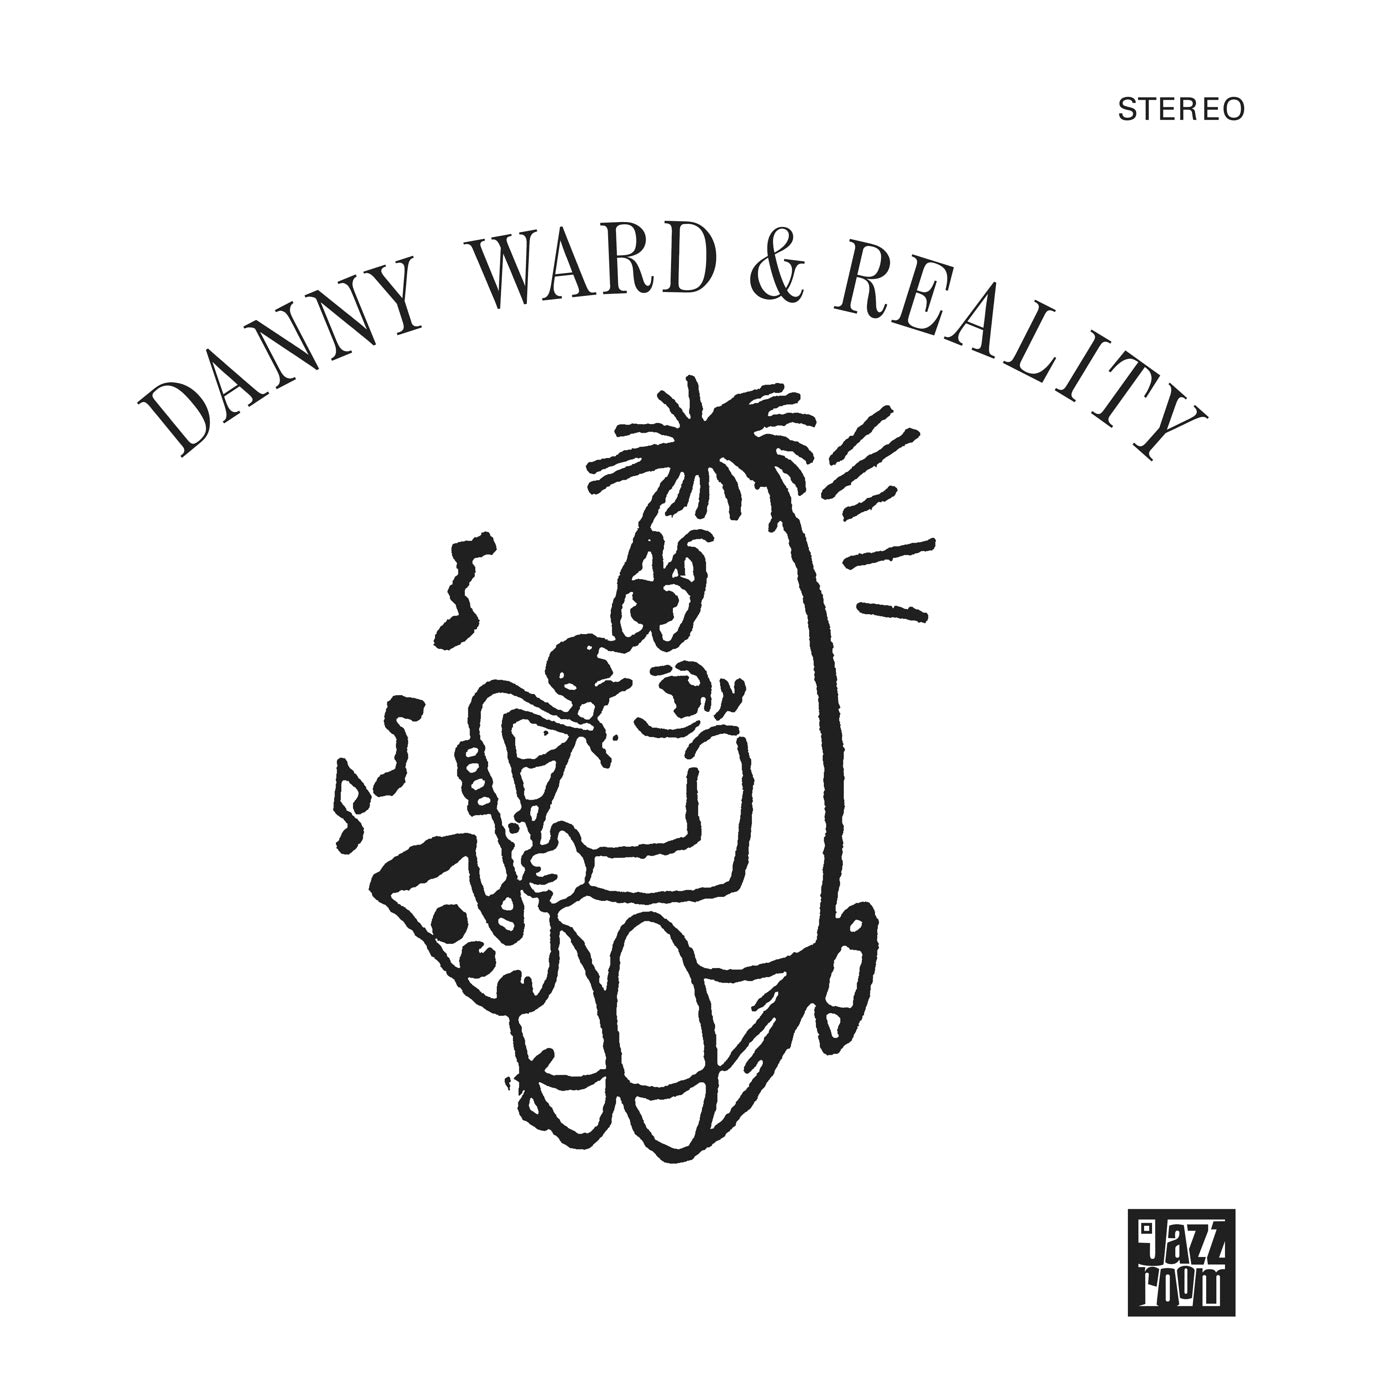 Danny Ward & Reality – Danny Ward & Reality